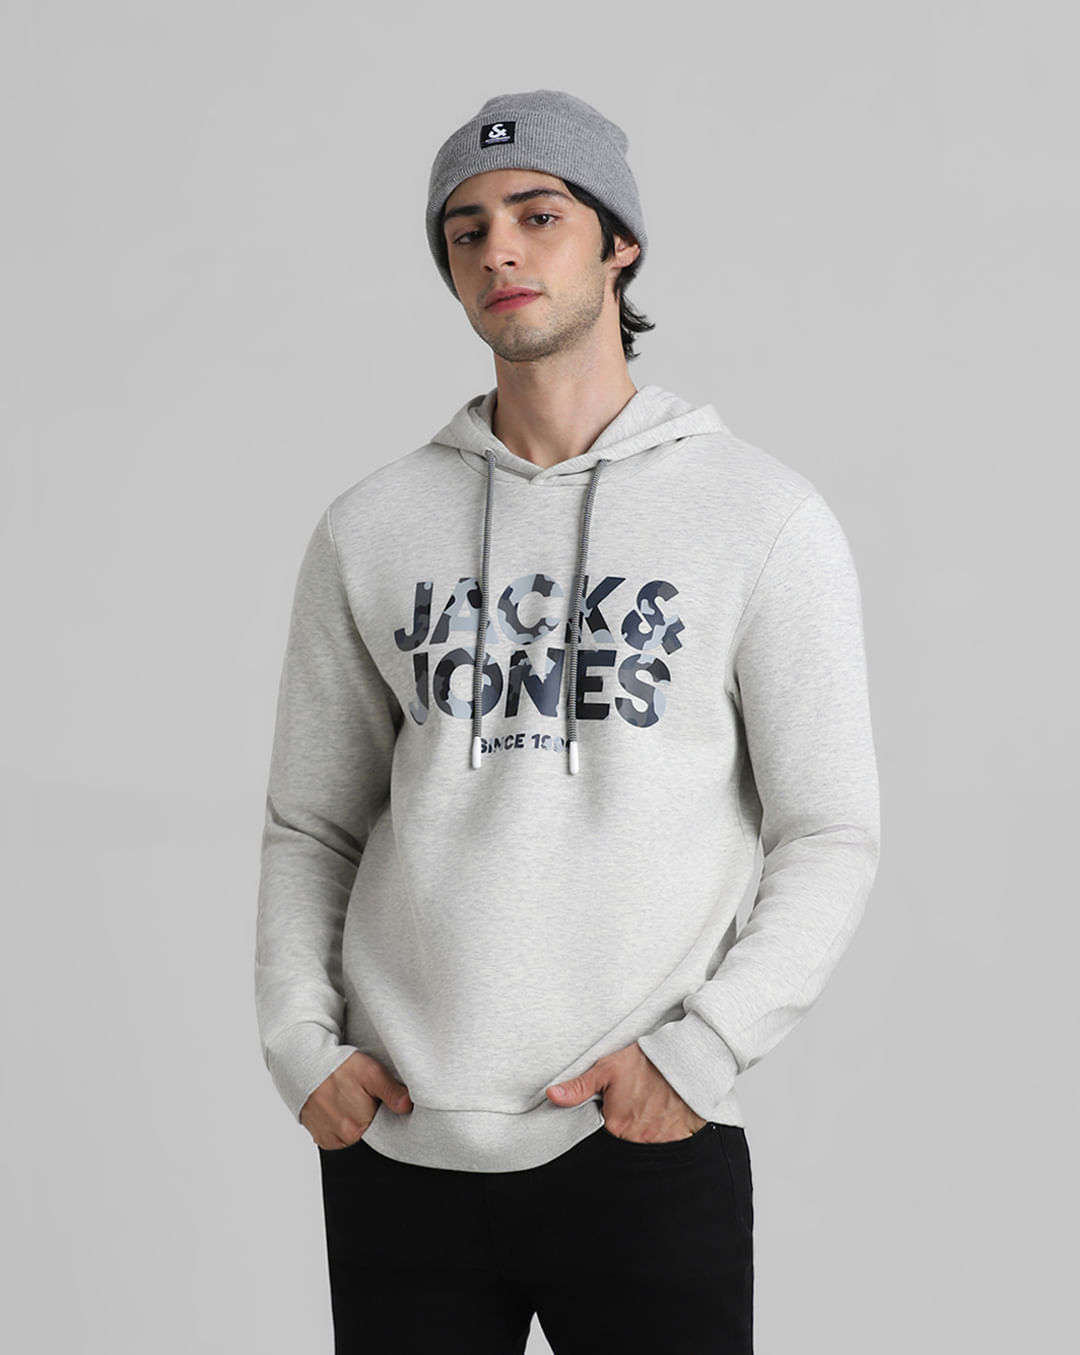 White Melange Hooded Sweatshirt For Men - JACK&JONES